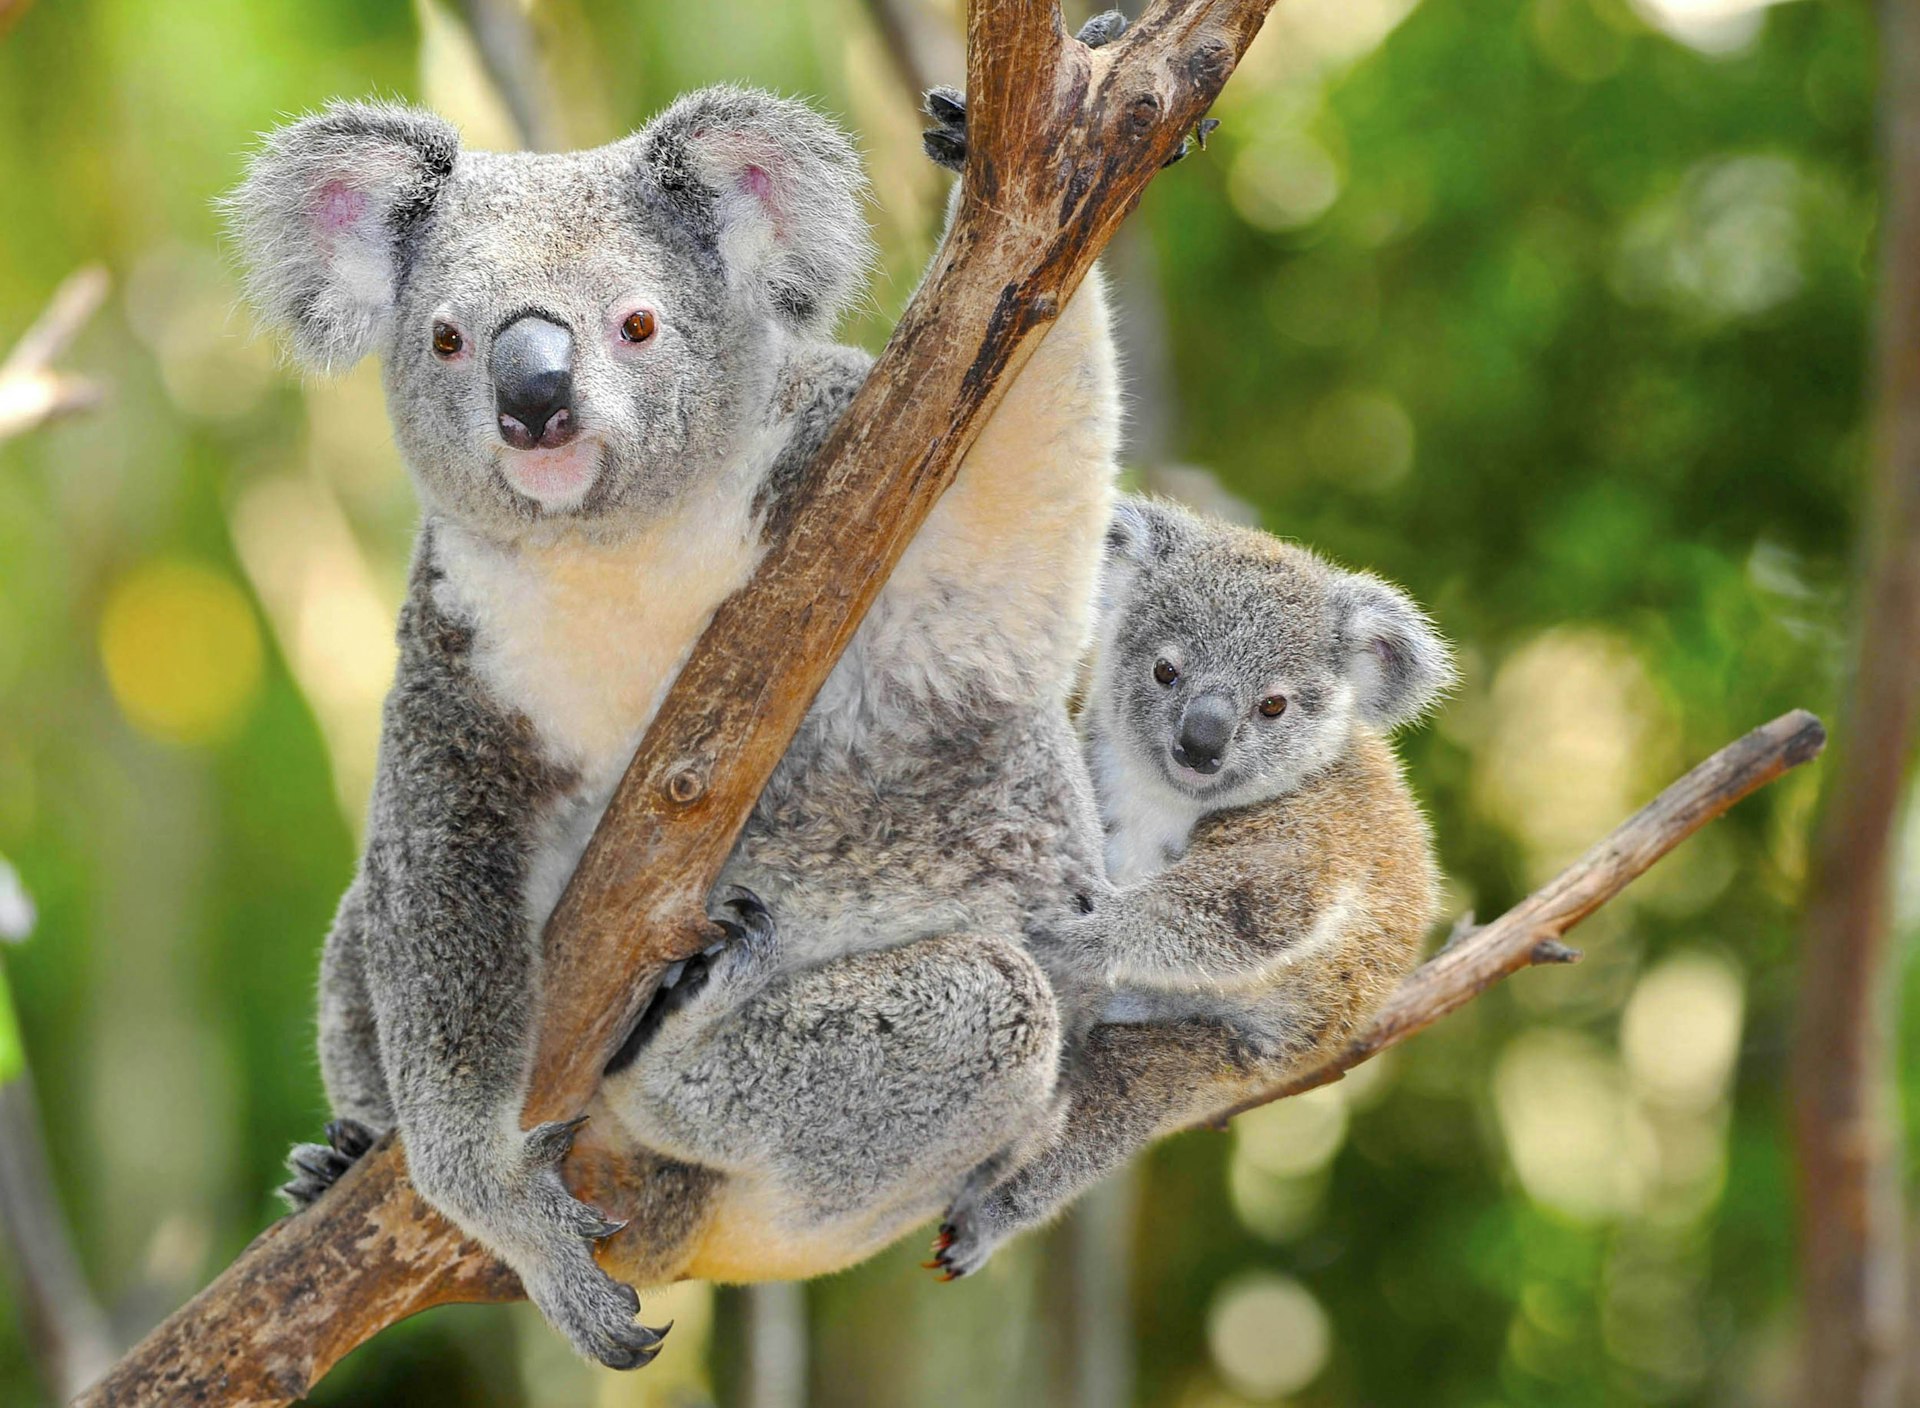 Australian Koala Bear with her baby in eucalyptus tree in Sydney, NSW